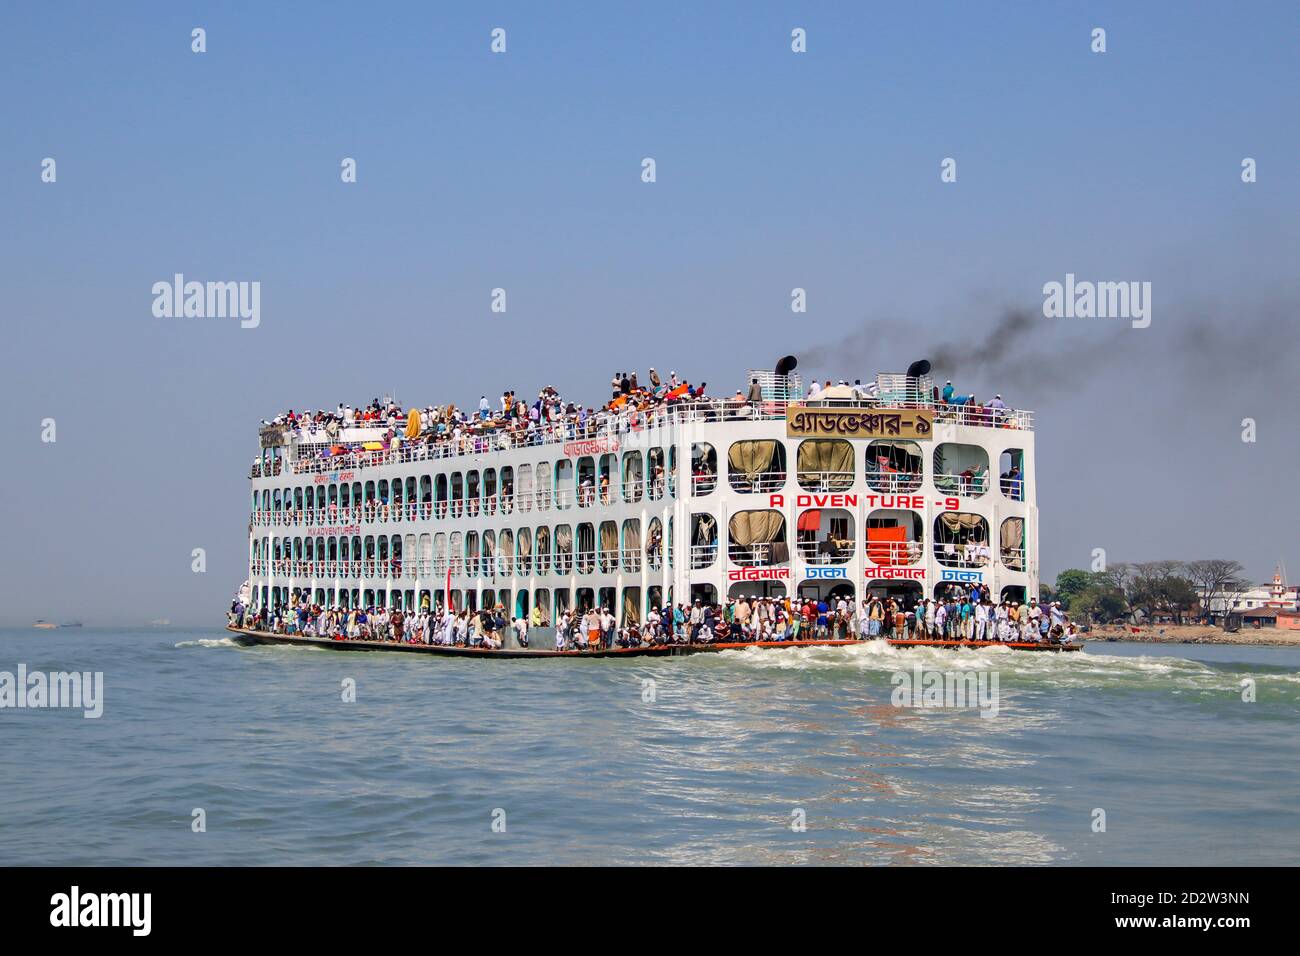 Rivière Meghna, Bangladesh : Adventure-9, ferry pour passagers très connu du Bangladesh Banque D'Images